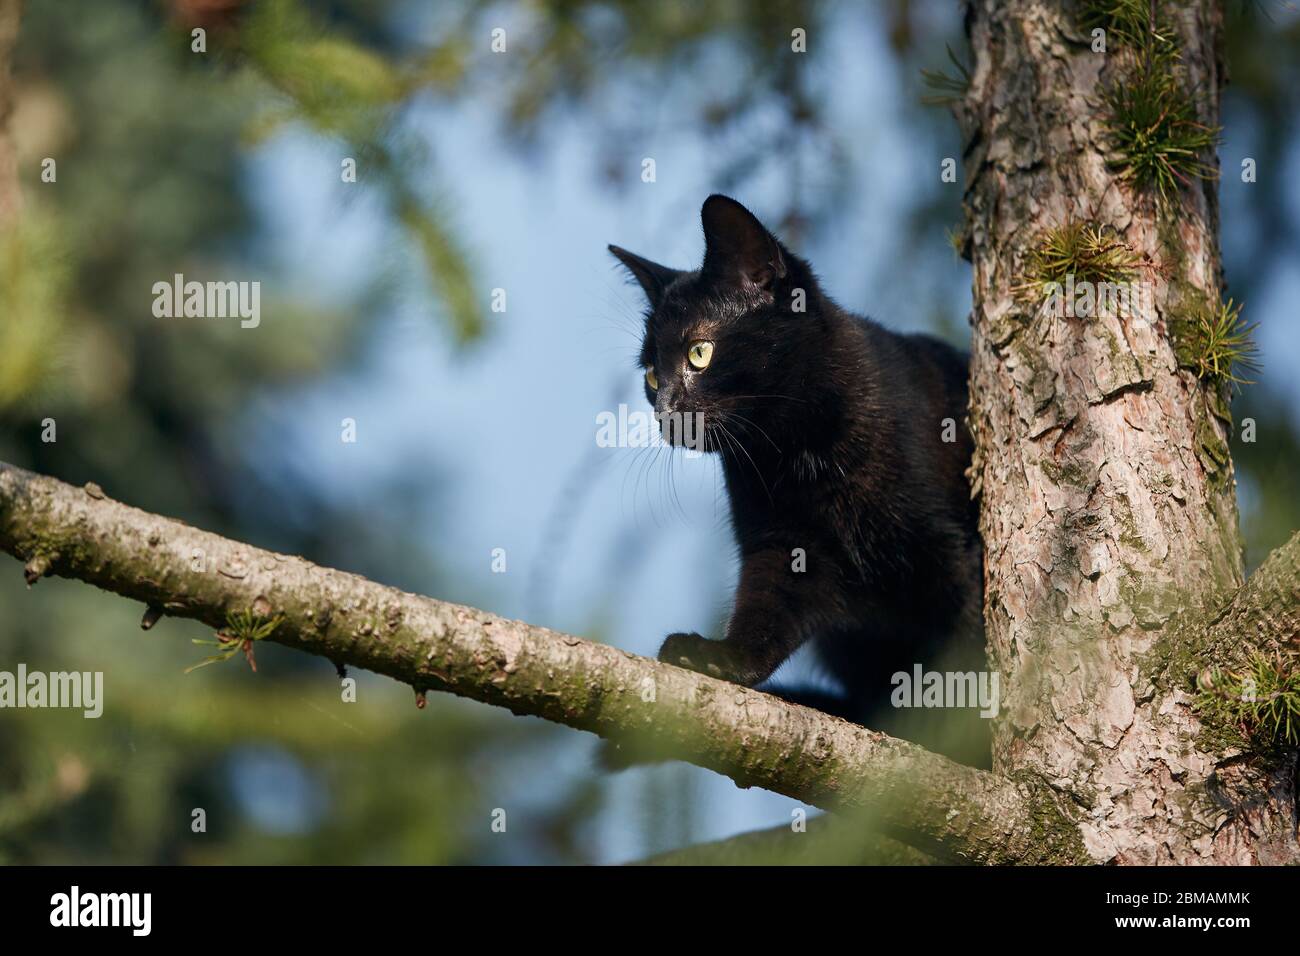 Vue à angle bas du chat noir avec les yeux jaunes sur l'arbre. Thèmes timidité, exploration et animaux perdus. Banque D'Images